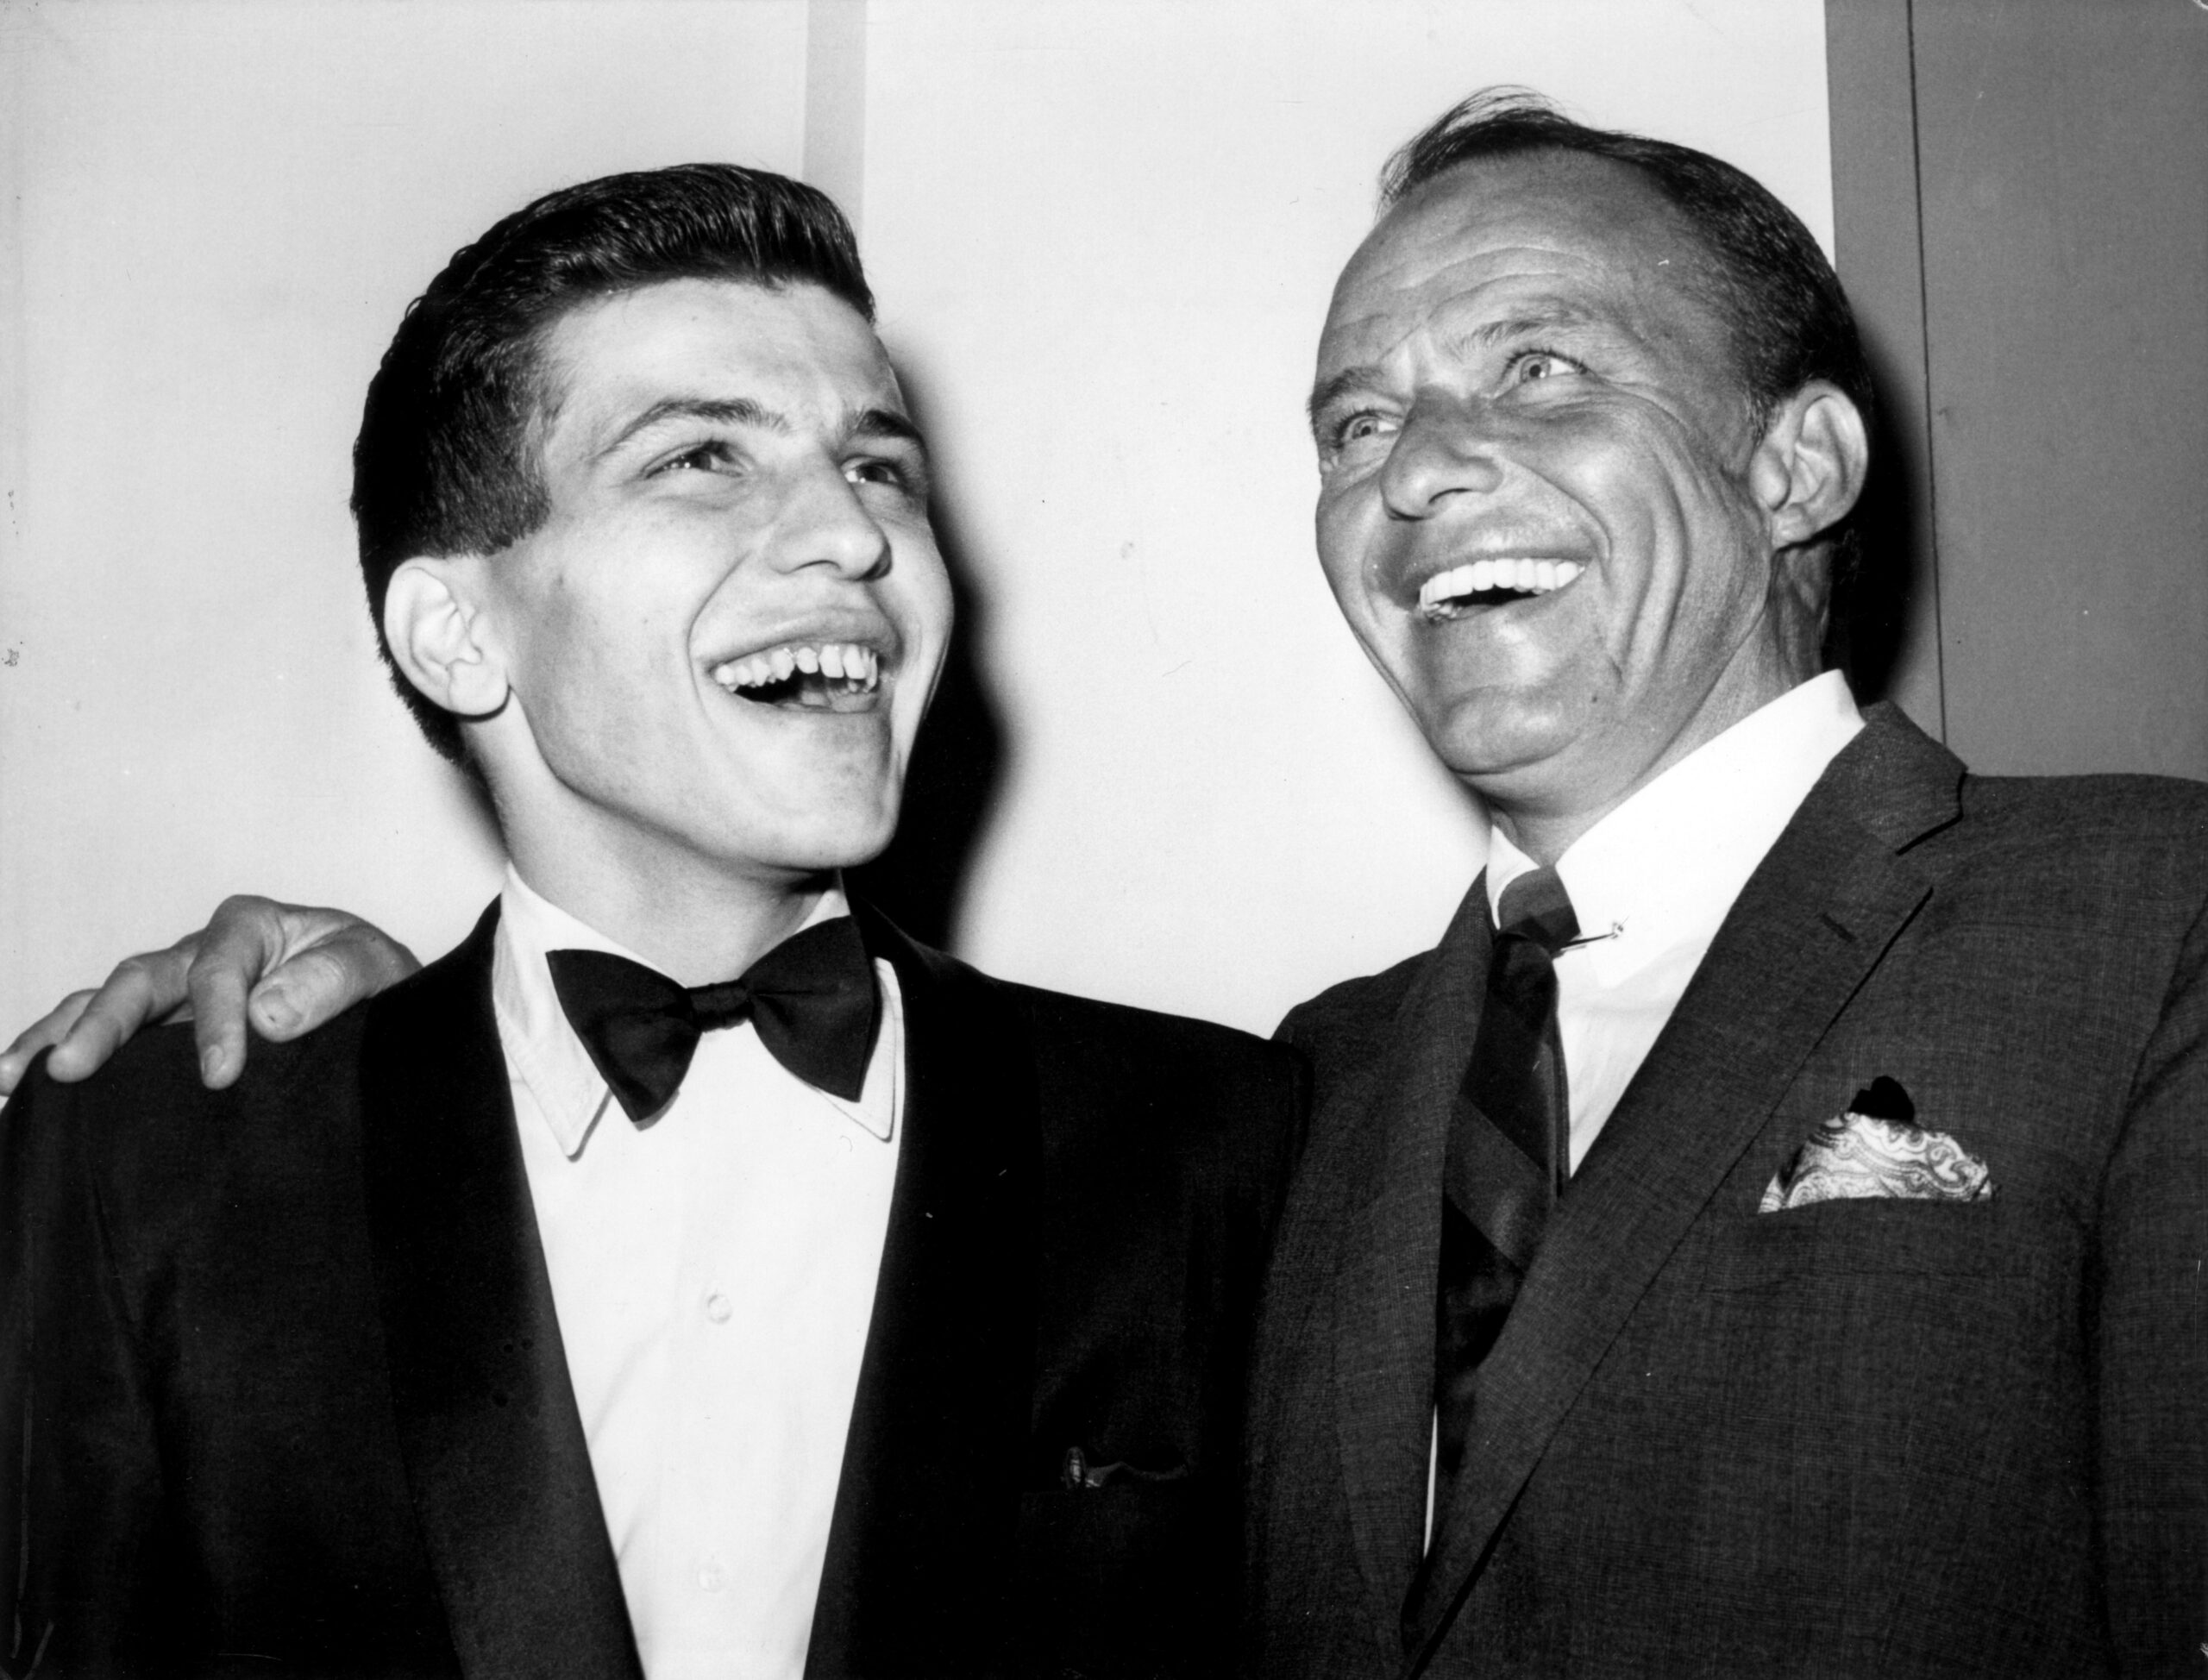 Frank Sinatra, Jr., Frank Sinatra